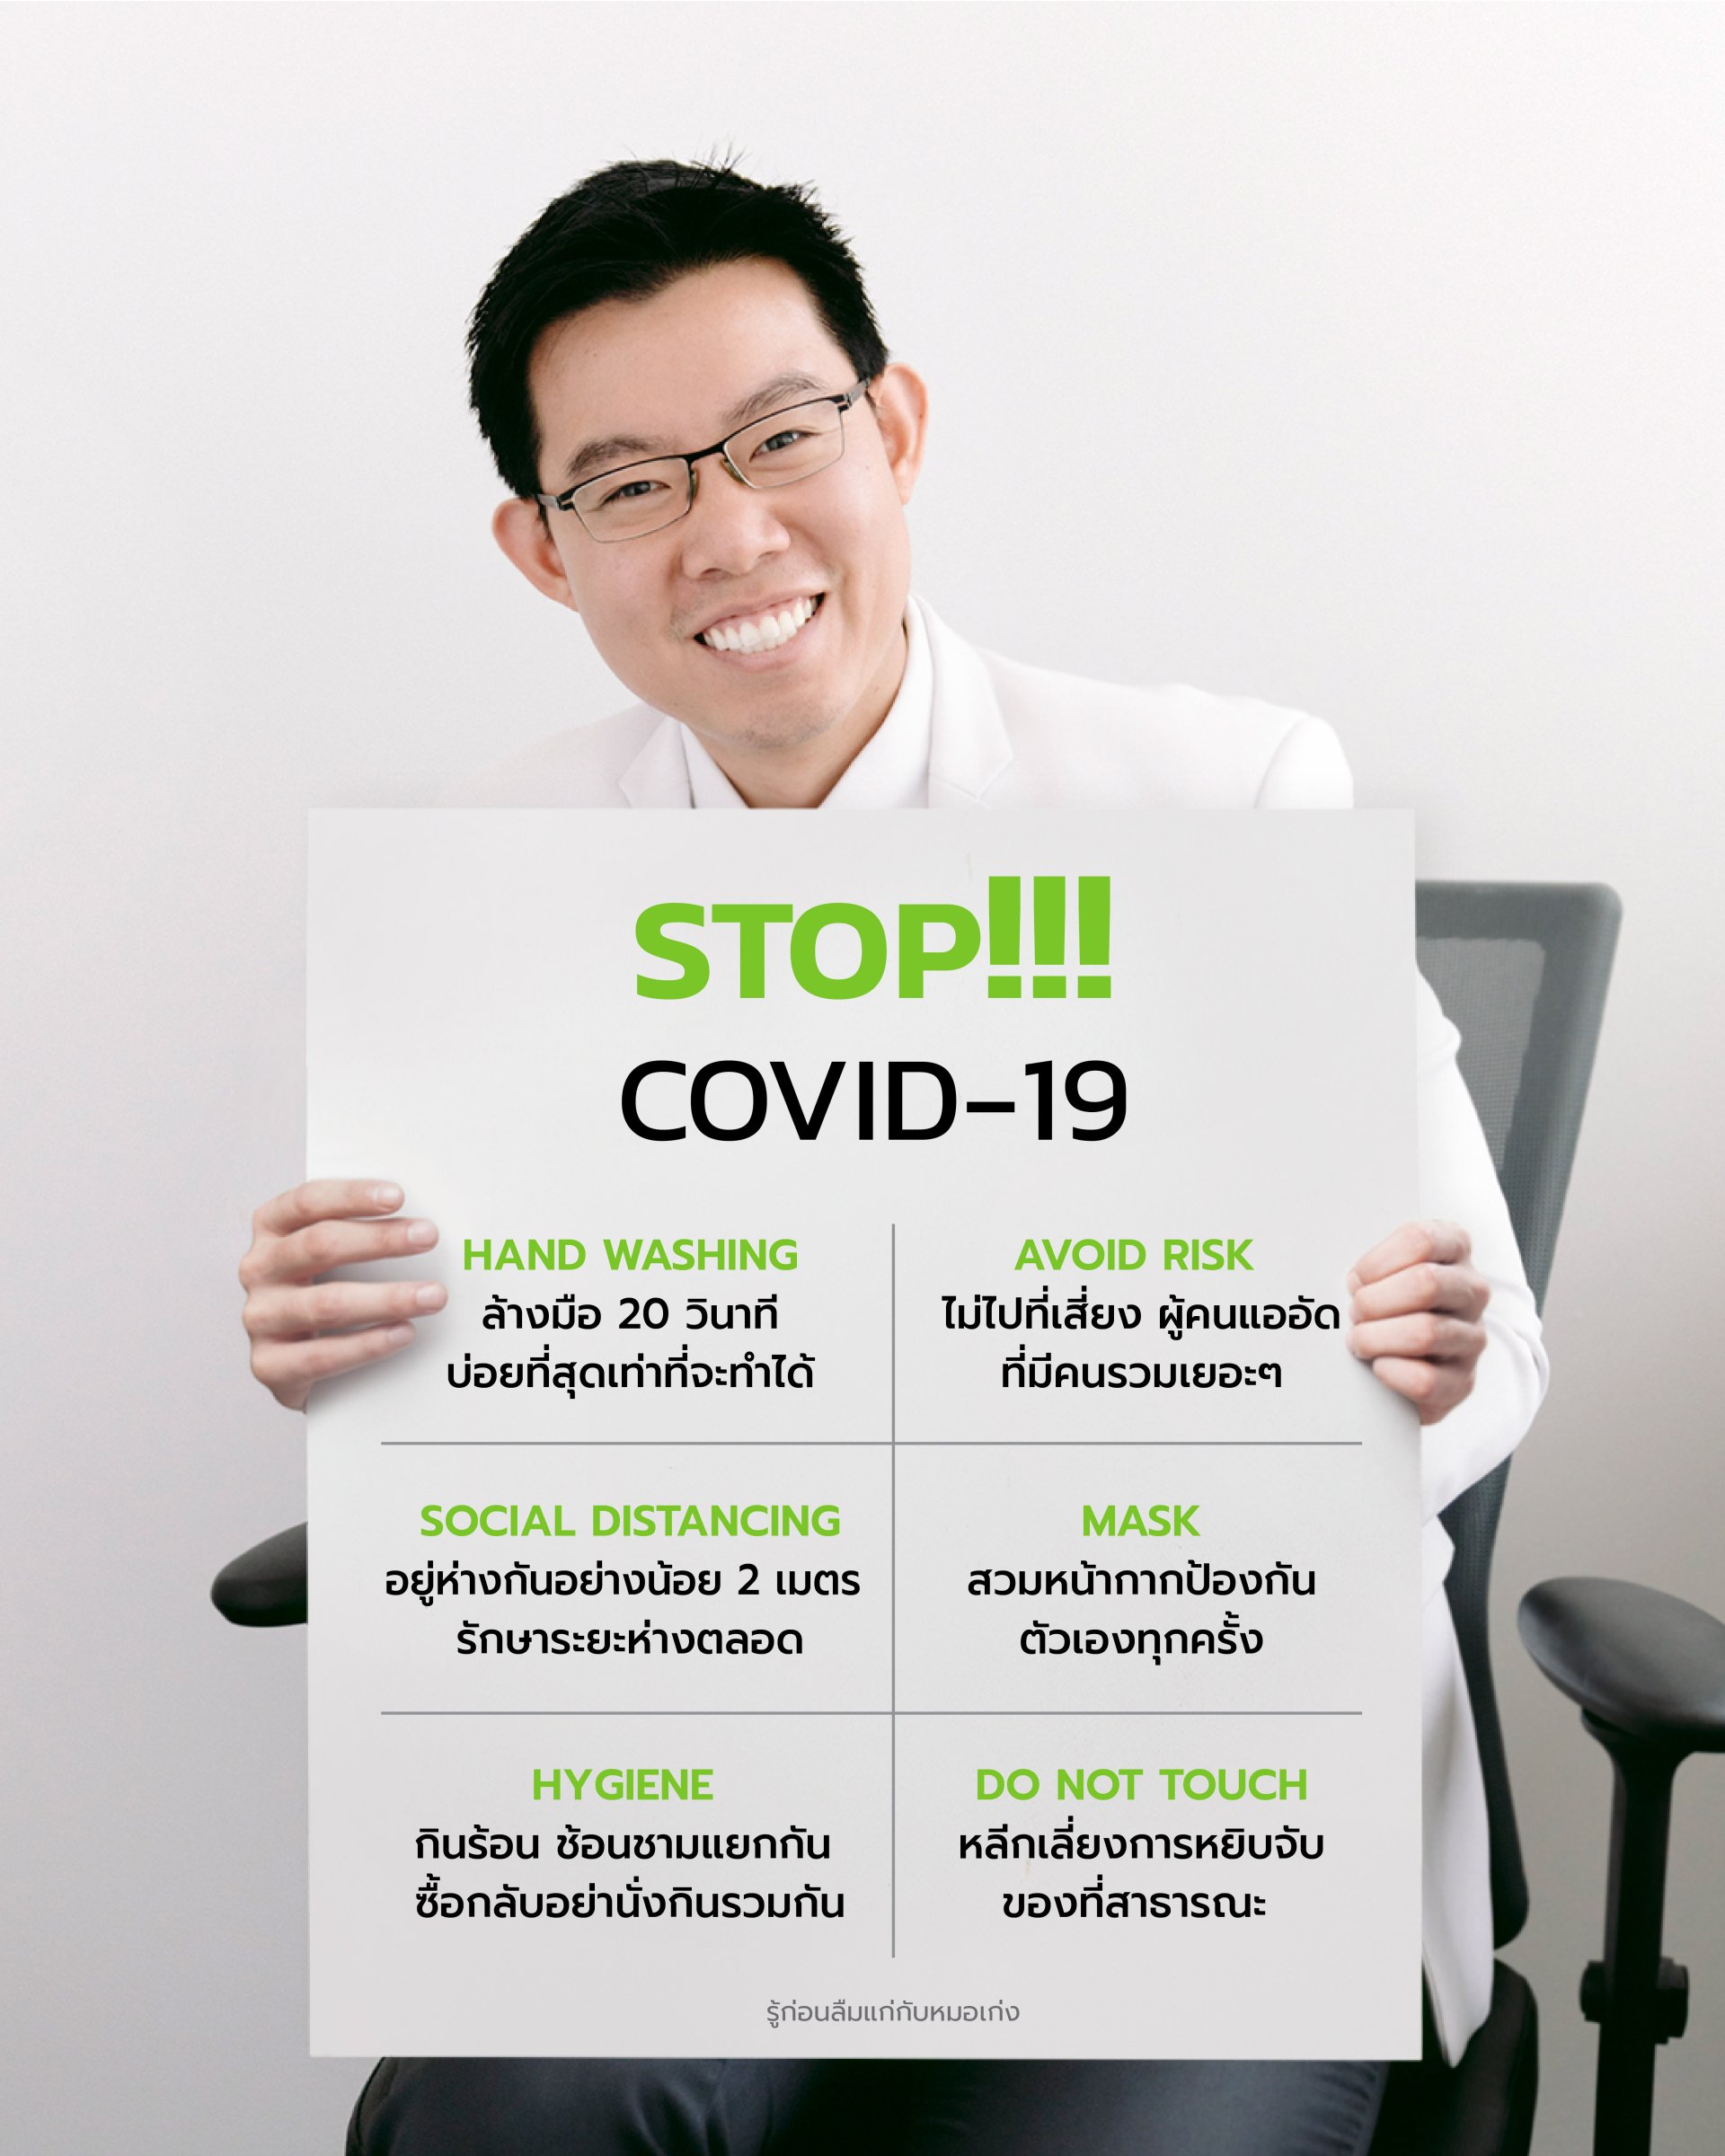 STOP ... COVID-19 !!!